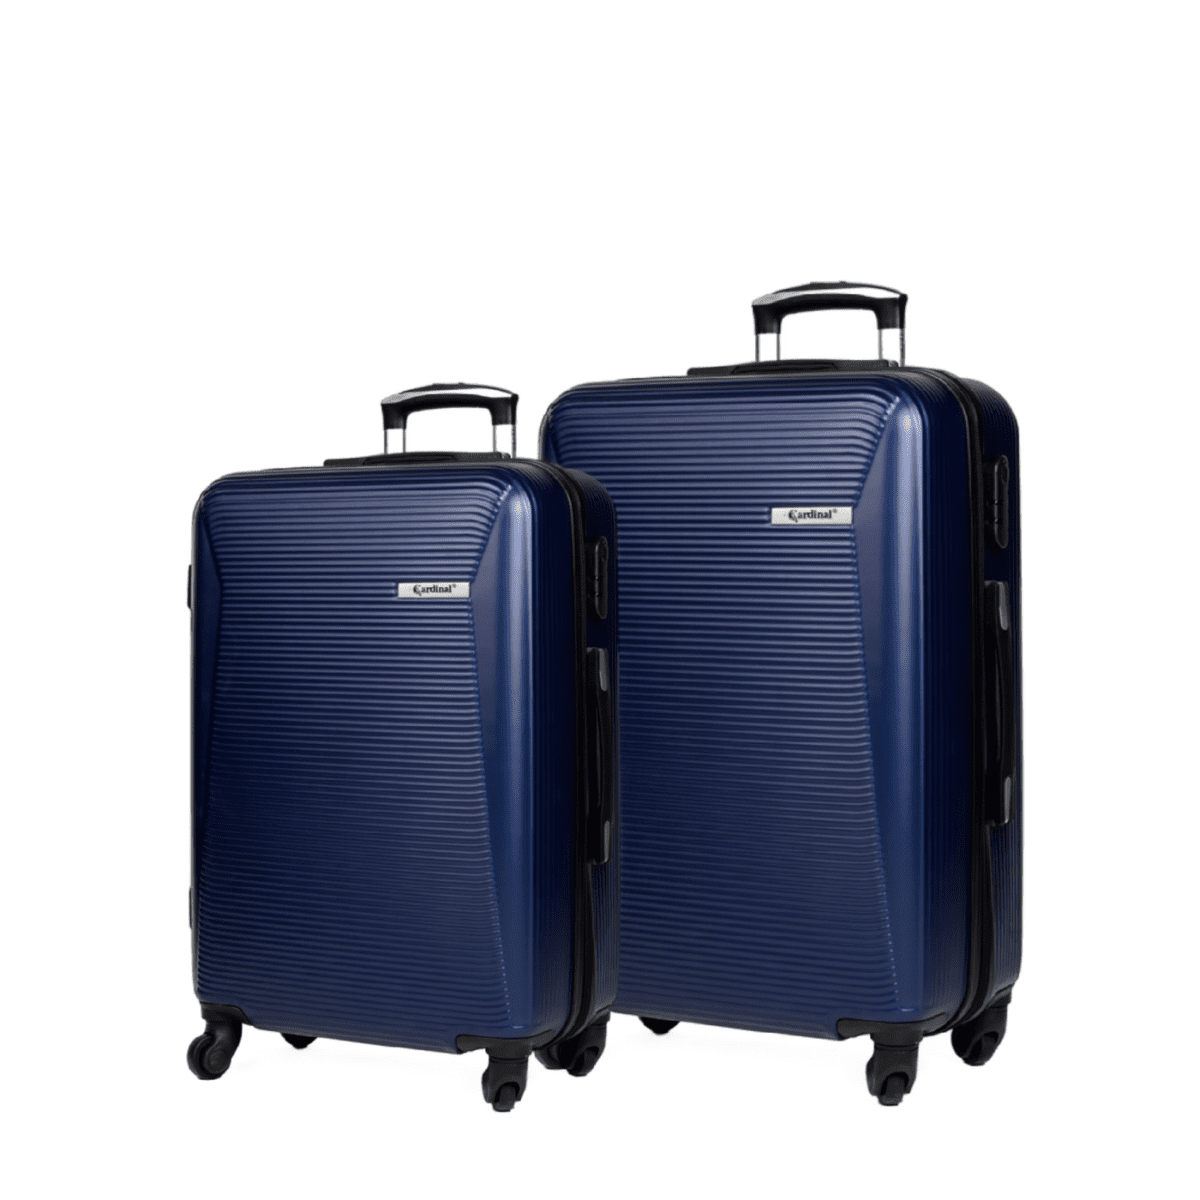 Βαλίτσες μεσαία , μεγάλη με κλειδαριά , υλικό abs σε χρώμα σκούρο μπλε .